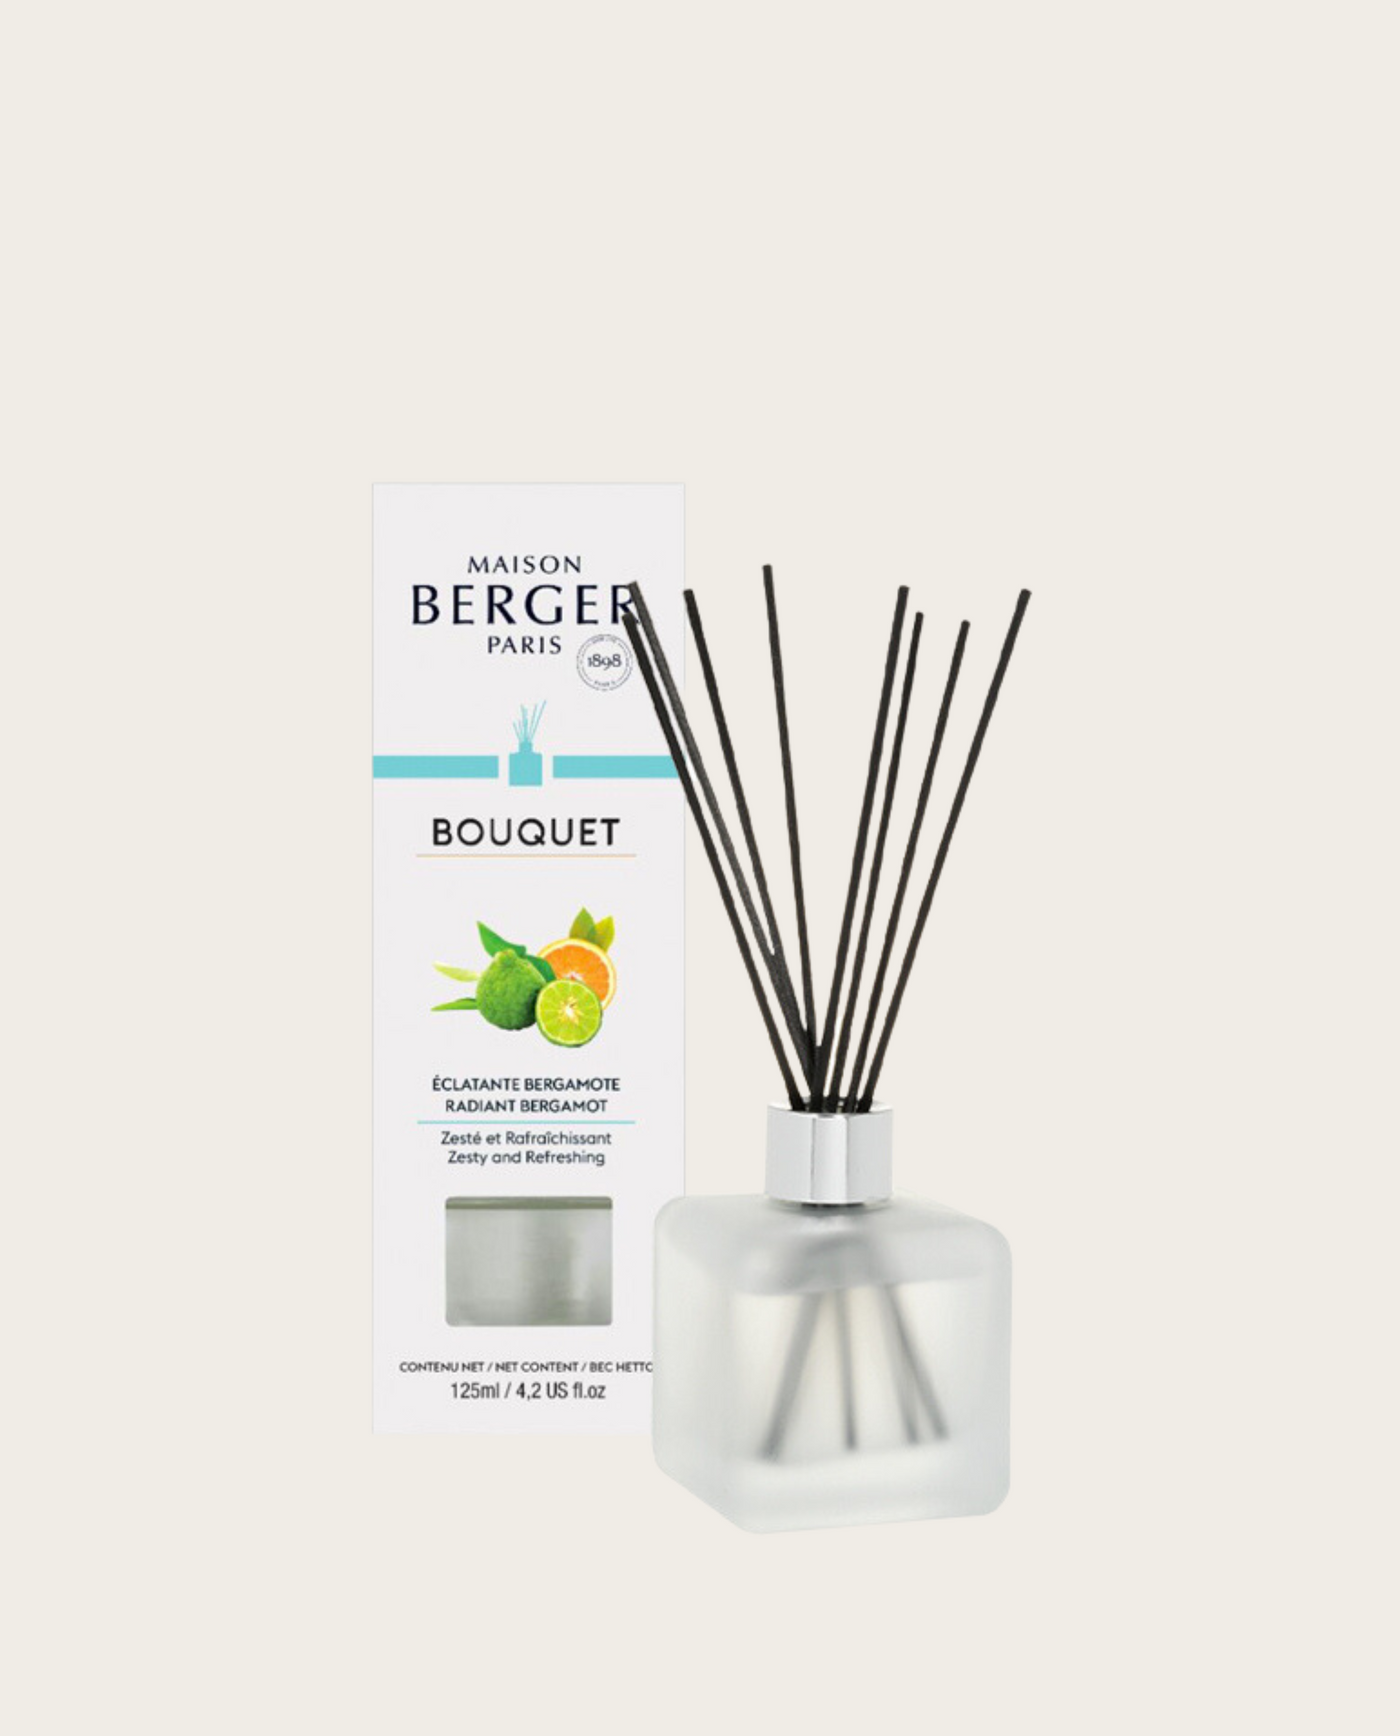 Fruchtige Bergamotte Raumduft Diffuser Lampe Berger - Maison Berger offizieller Onlineshop DE - AT